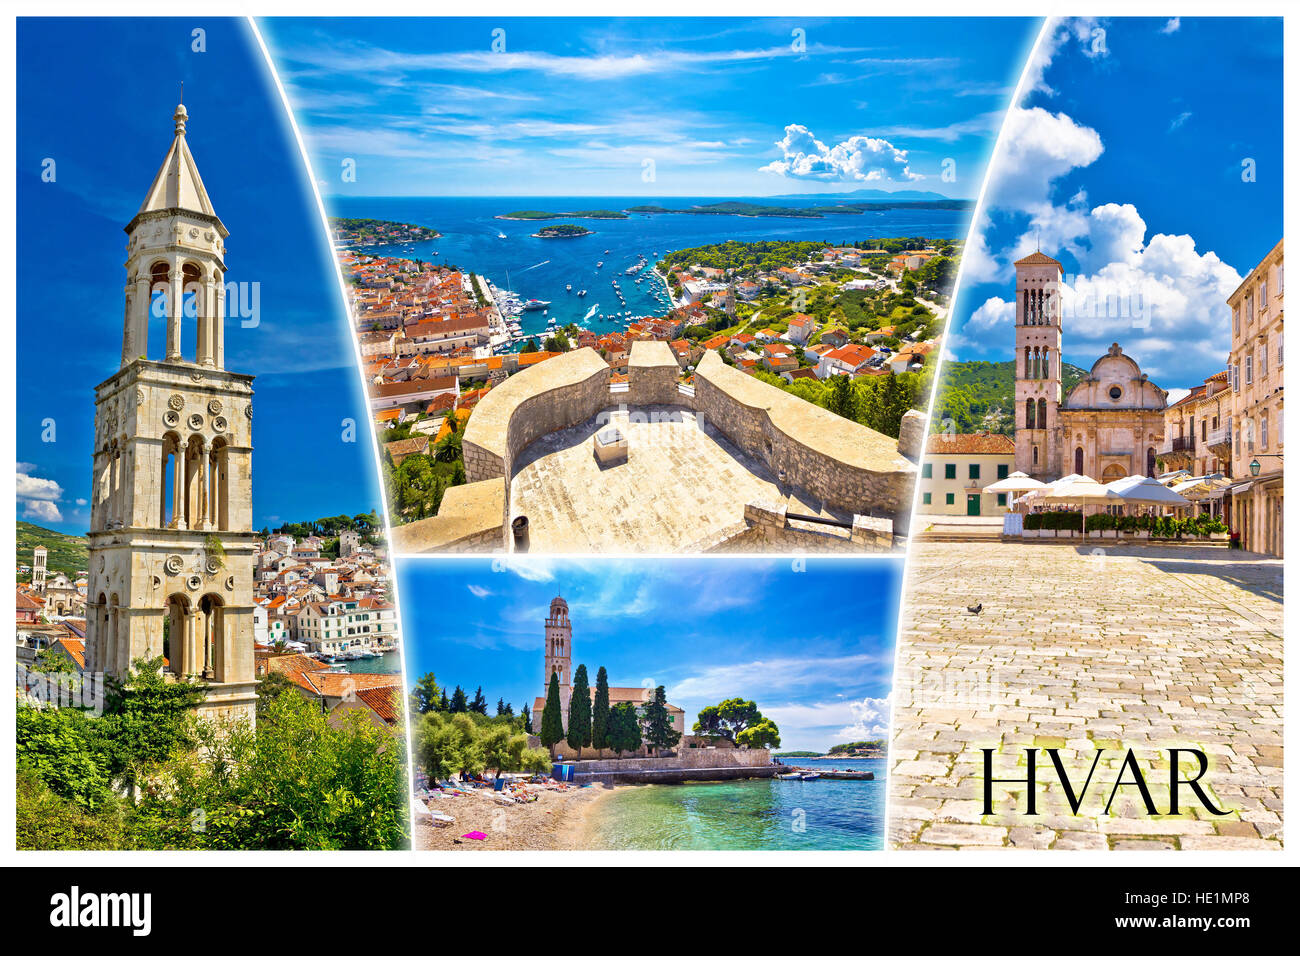 Island of Hvar tourist postcard with label, famous landmarks and beautiful nature, Dalmatia, Croatia Stock Photo